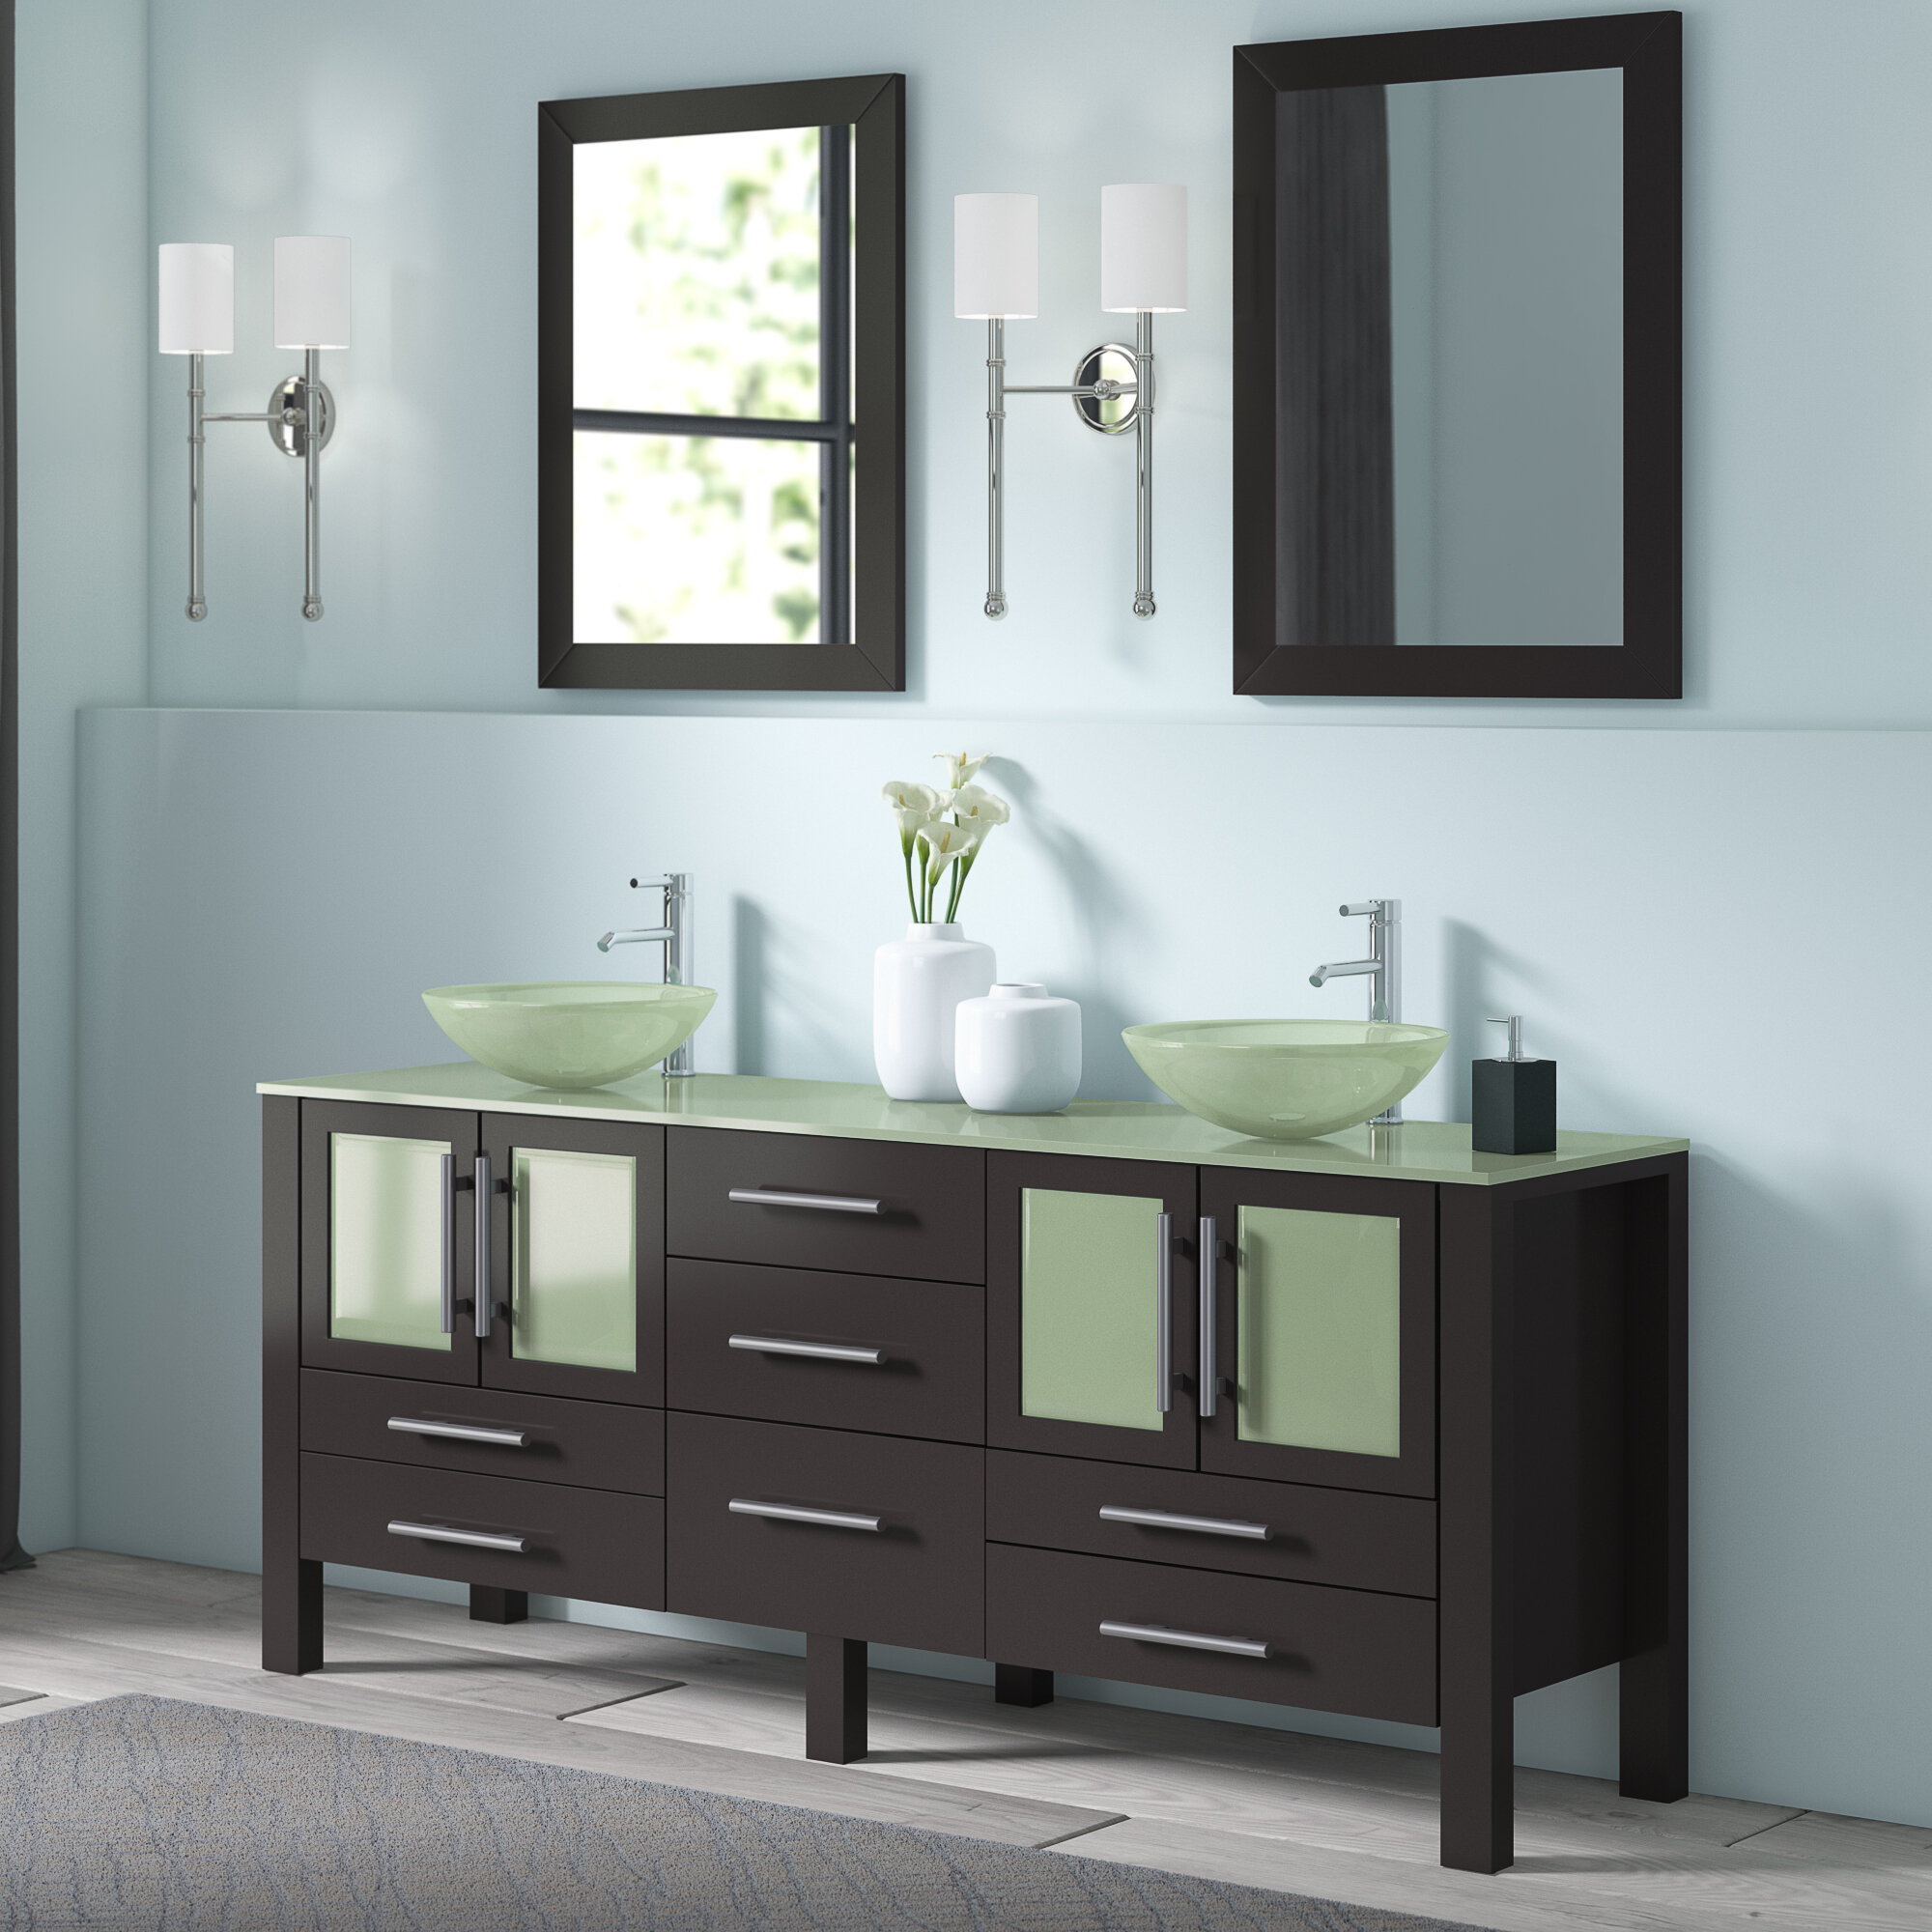 Orren Ellis Lisenby 71 Double Bathroom Vanity Set With Mirror Reviews Wayfair